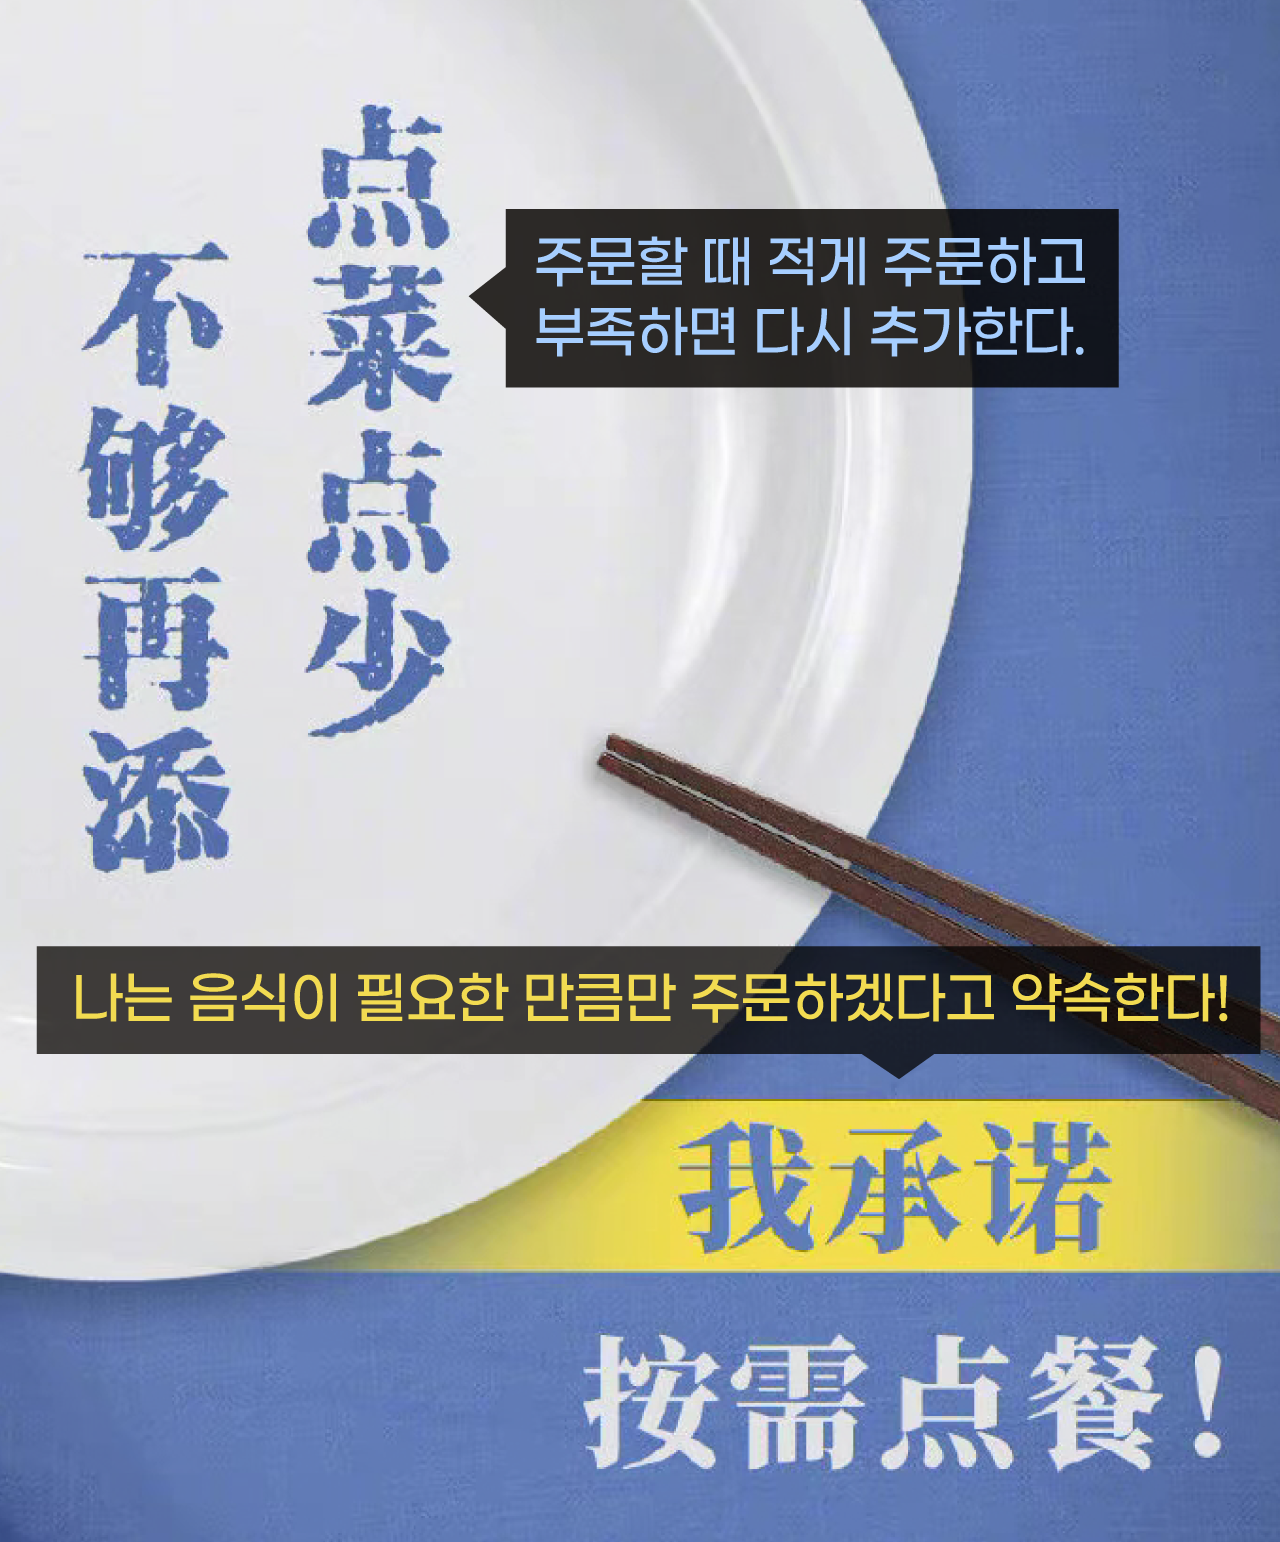 관영매체 인민일보가 ‘음식낭비 금지법’ 홍보를 위해 만든 포스터 (출처: 인민일보)